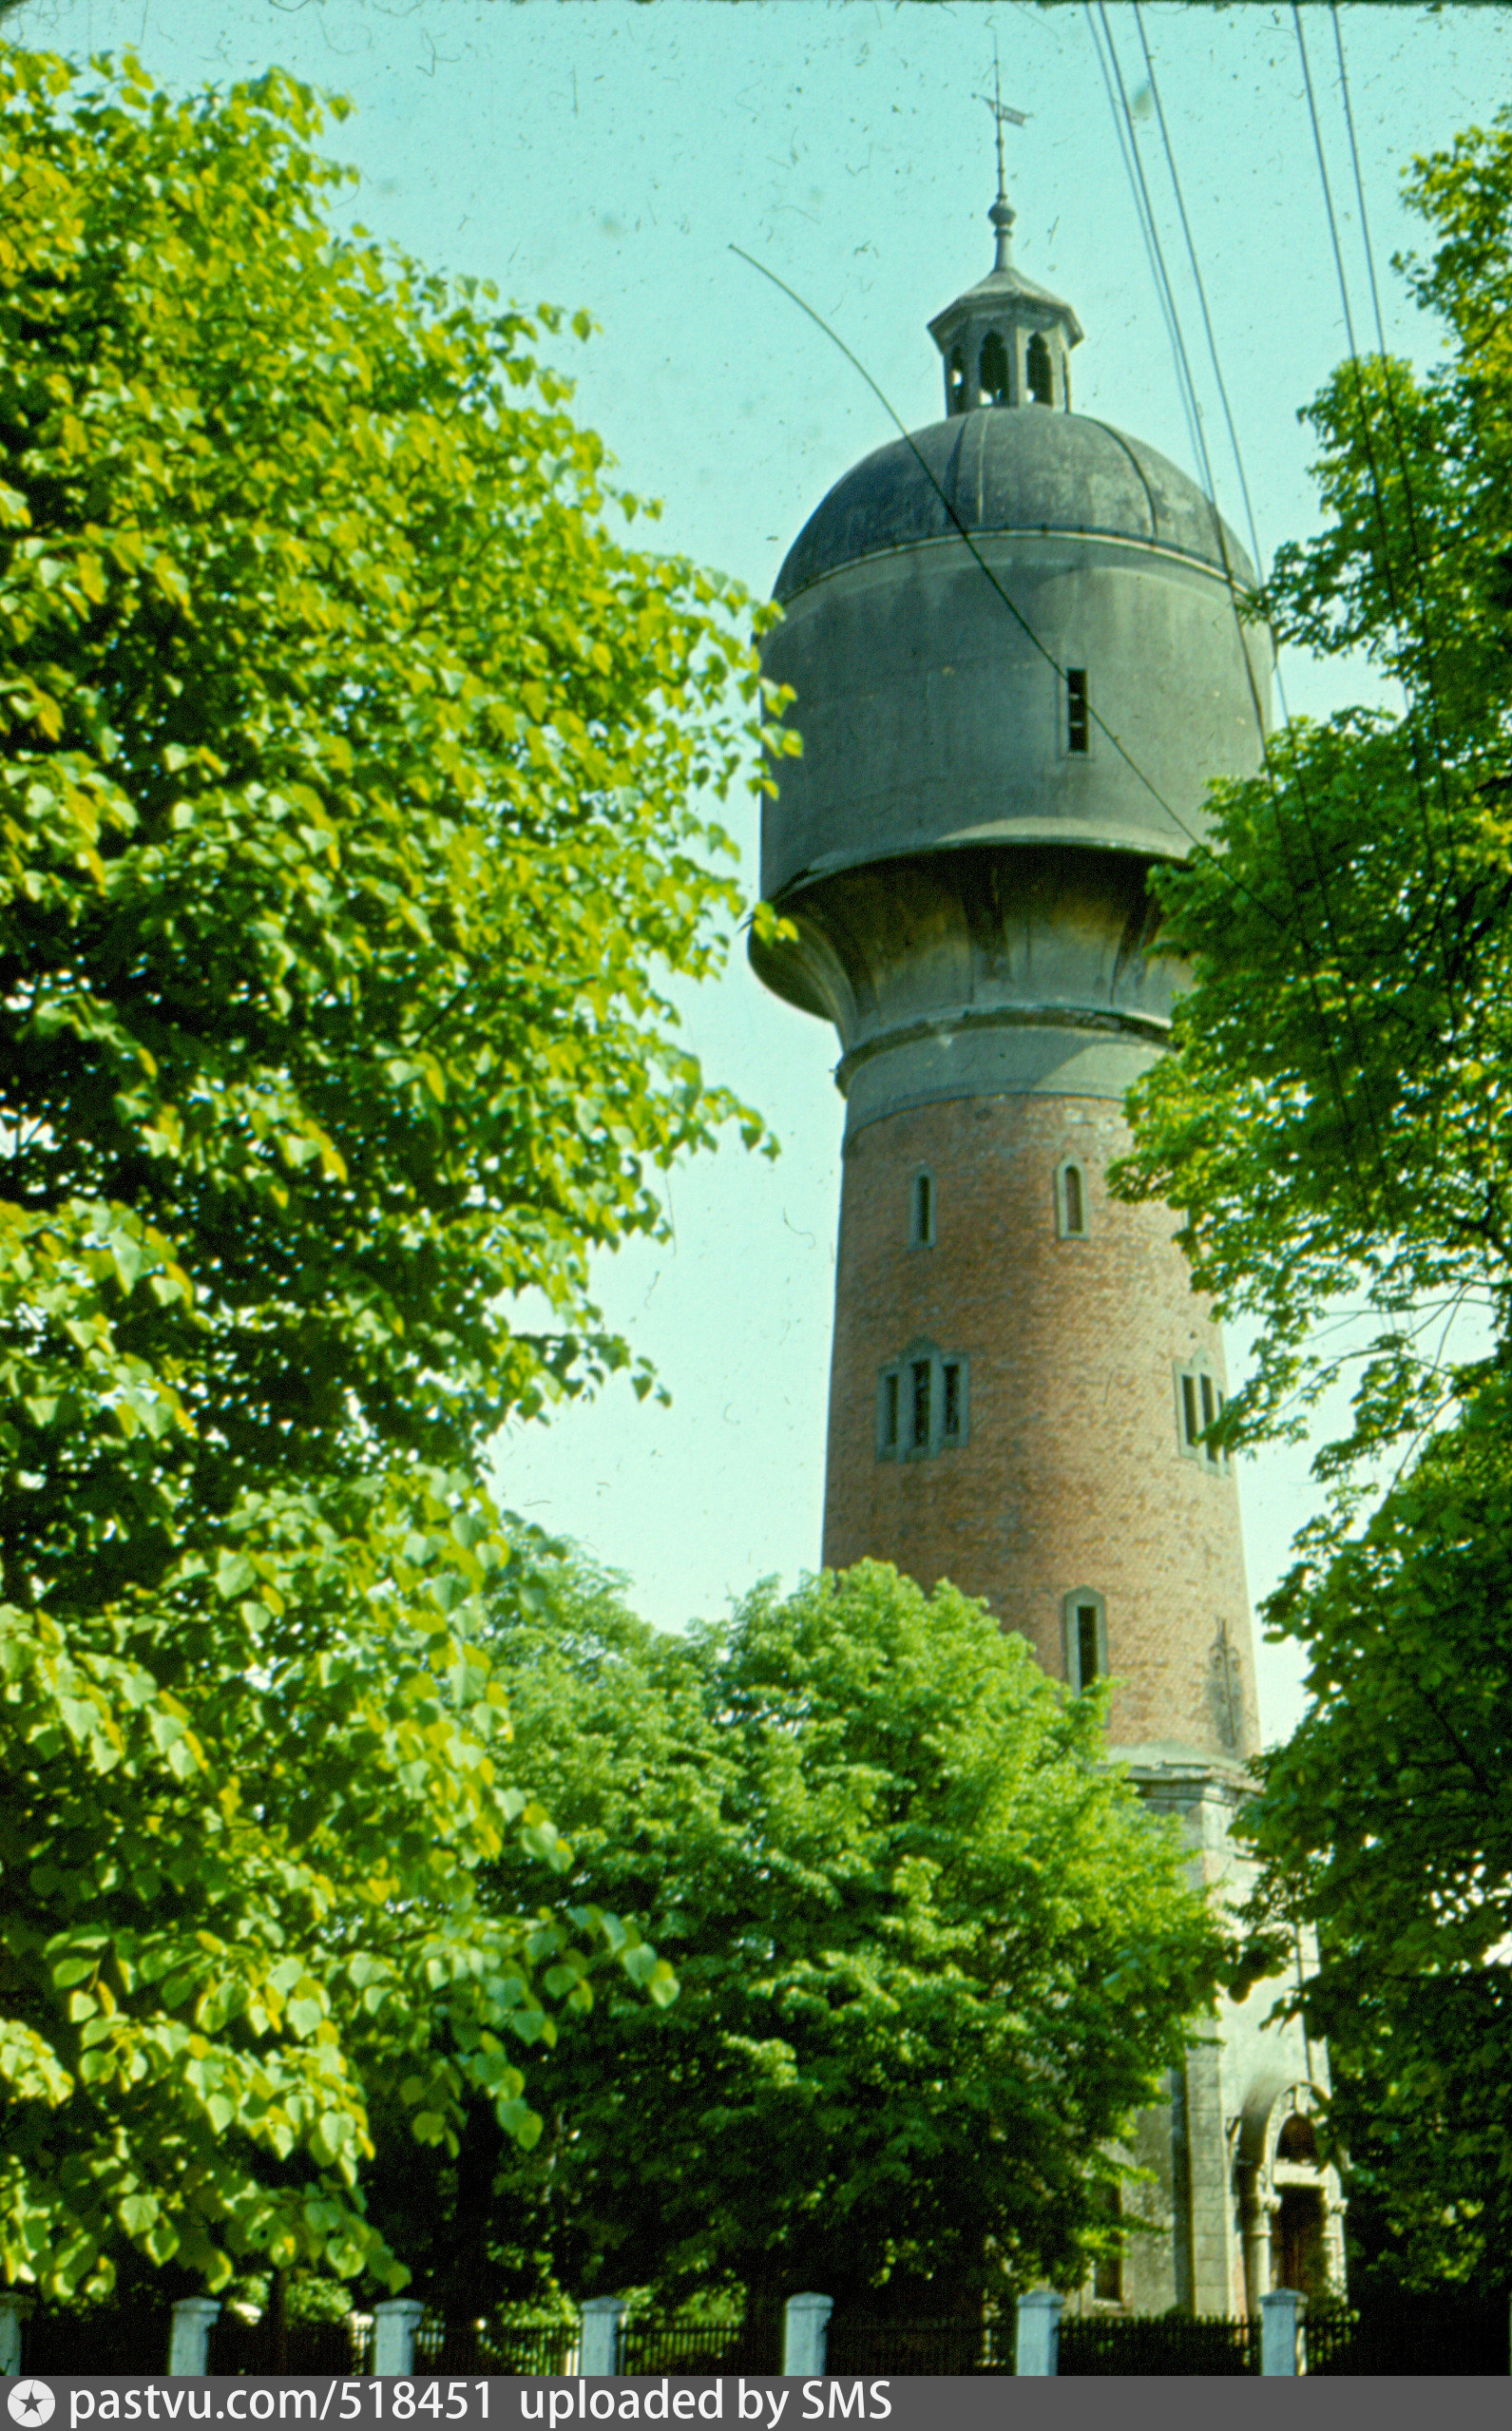 Фото 1978г. Башня высотой почти 40 метров построена в 1905 году и снабжала водой весь курорт. Перебоев с подачей воды практически не было. 